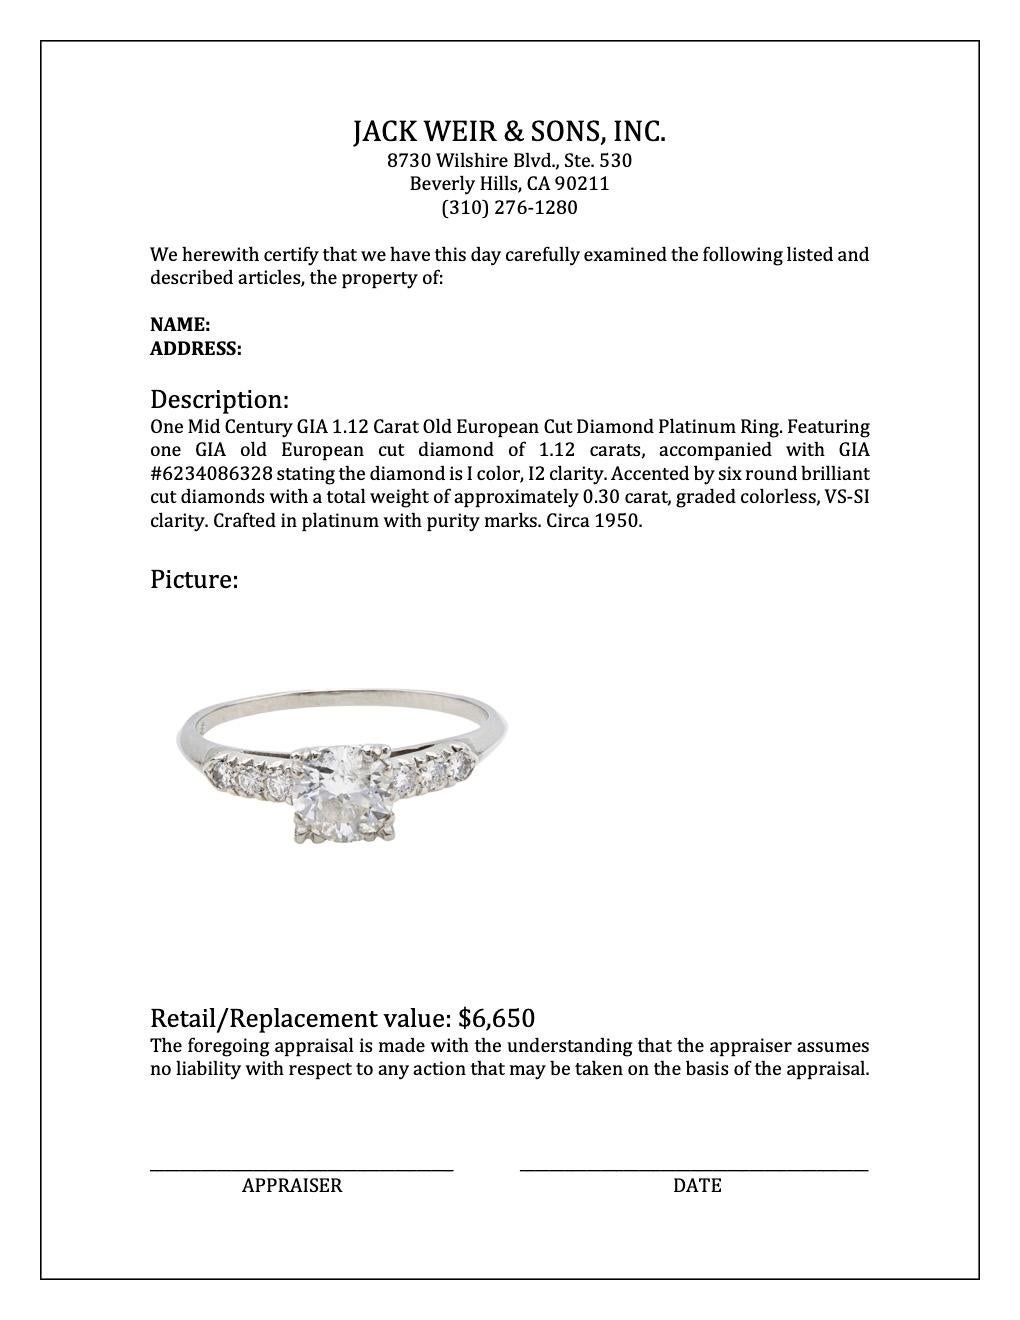 Mid-Century GIA 1.12 Carat Old European Cut Diamond Platinum Ring For Sale 4